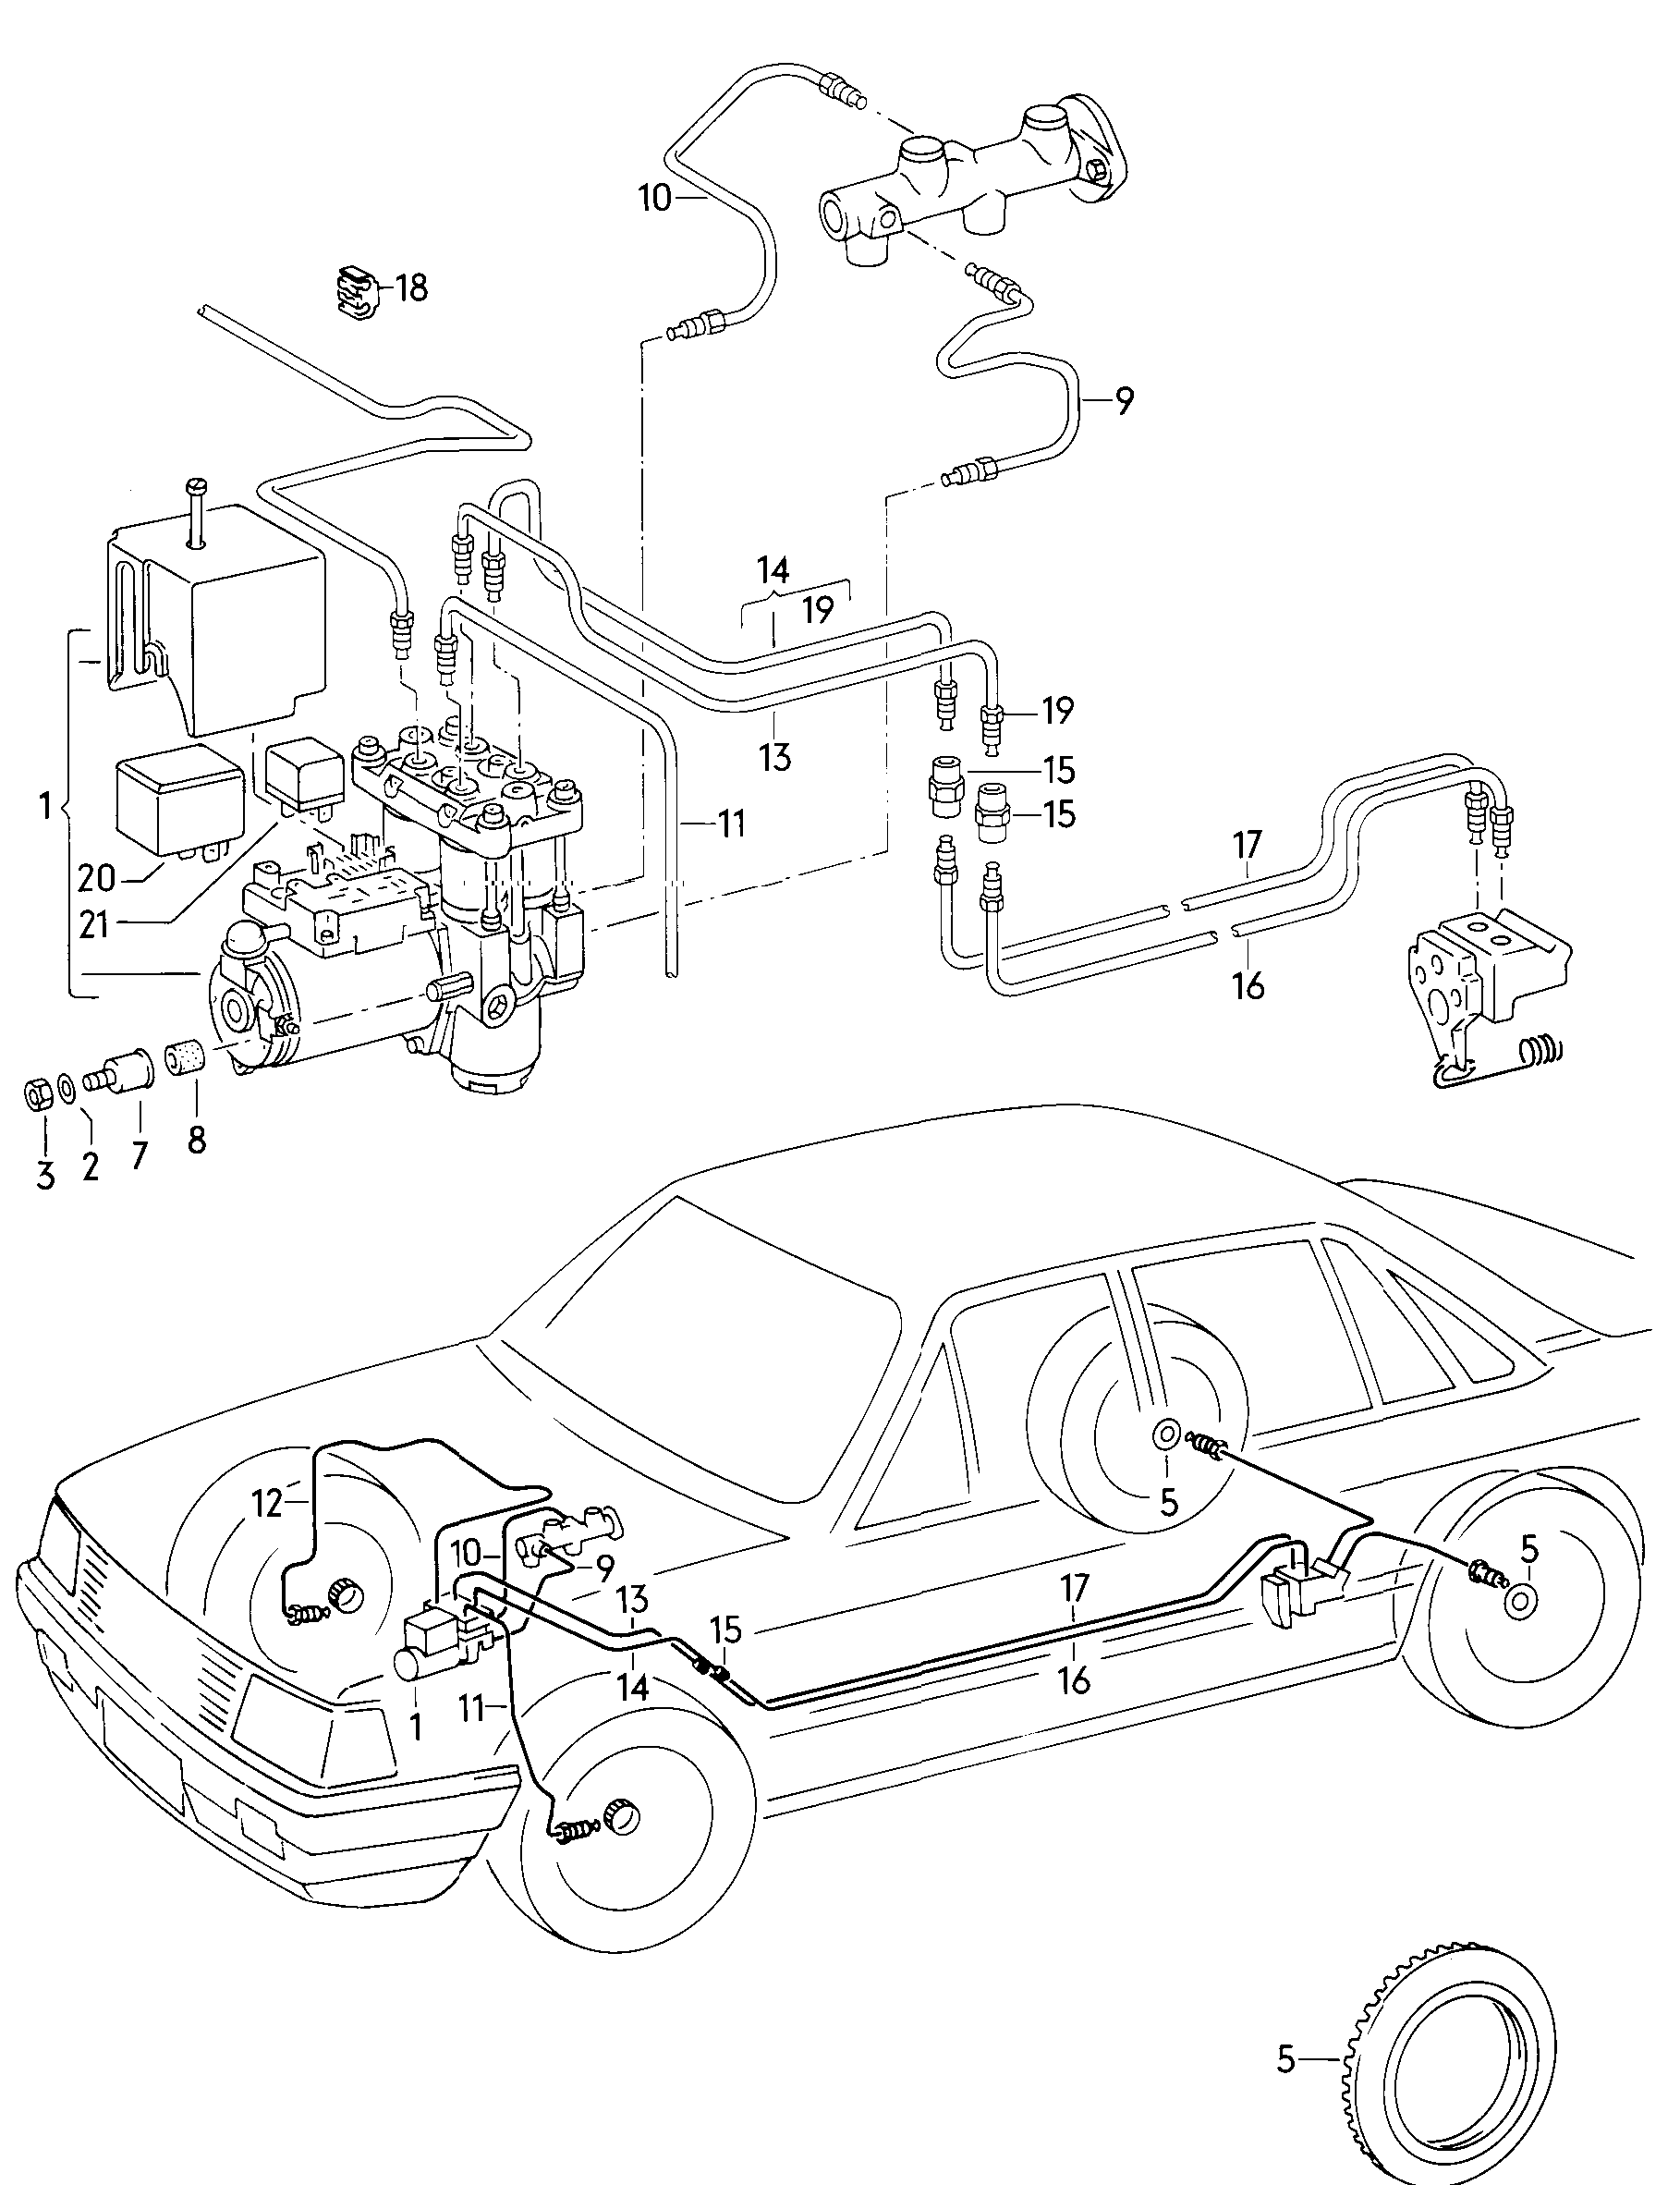 BremsdruckreglerRotor für DrehzahlfühlerBremsrohrfür Anti-Blockiersystem -ABS-  - Audi 100/Avant - a100